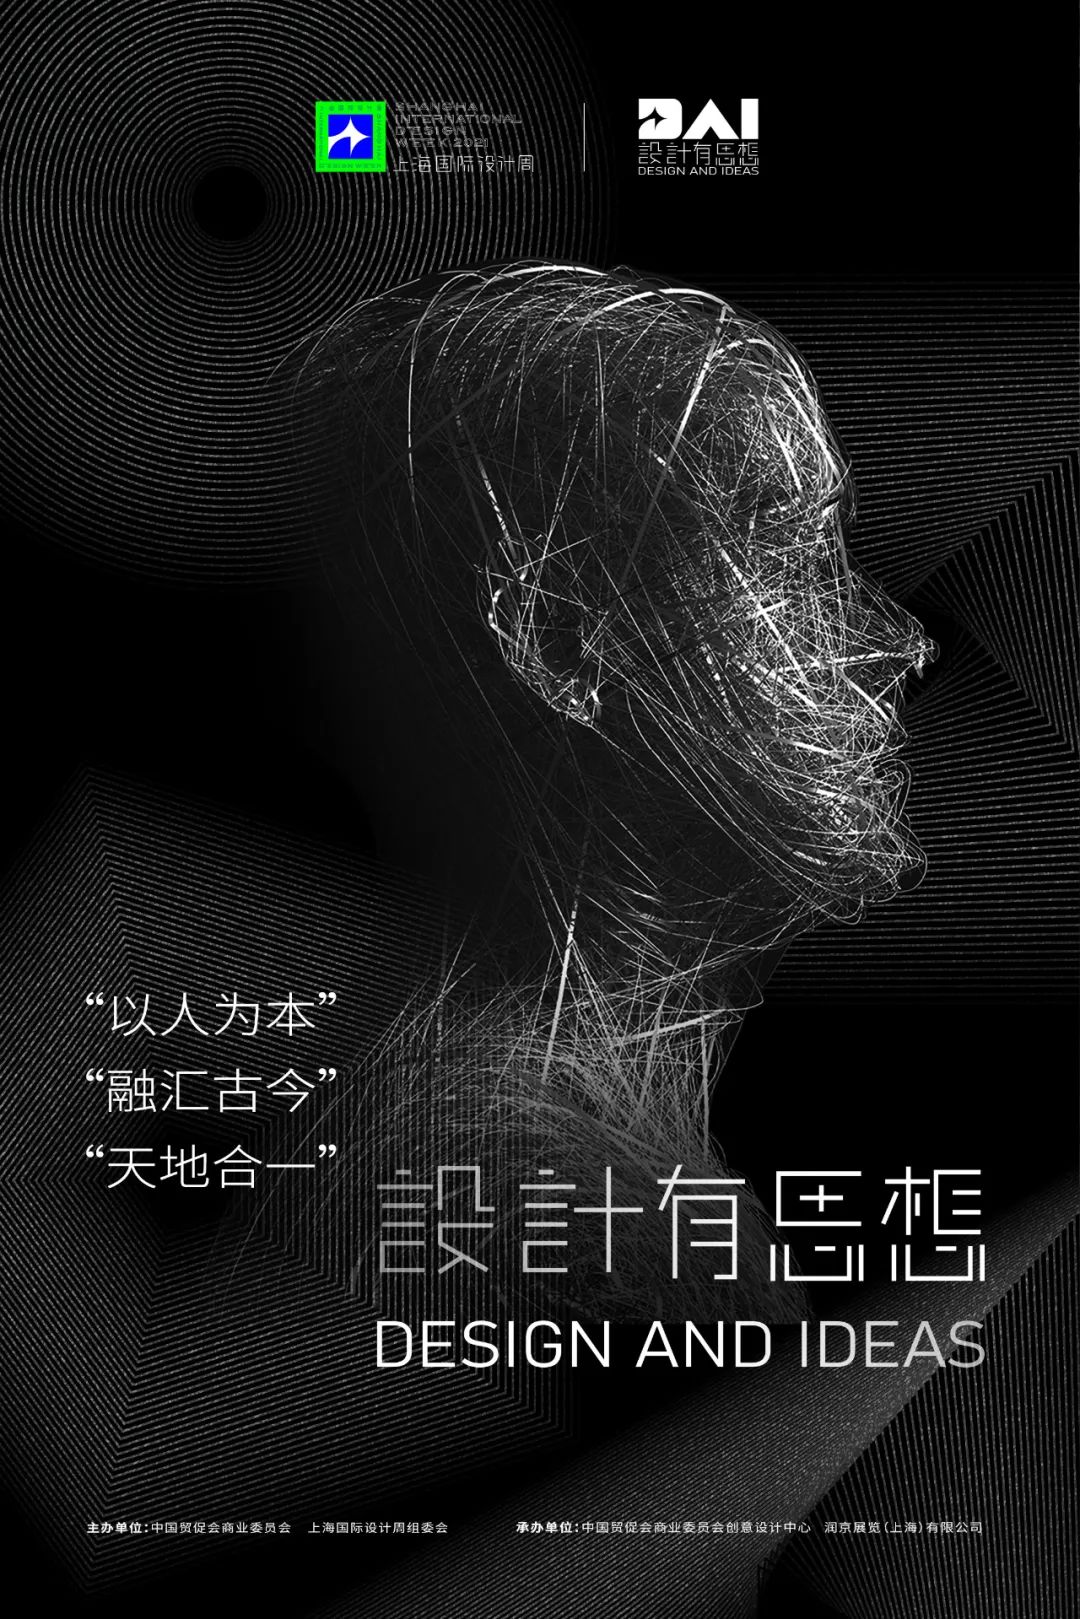 上海国际设计周建立设计师品牌打造强IP项目启动「百城千人中国设计」